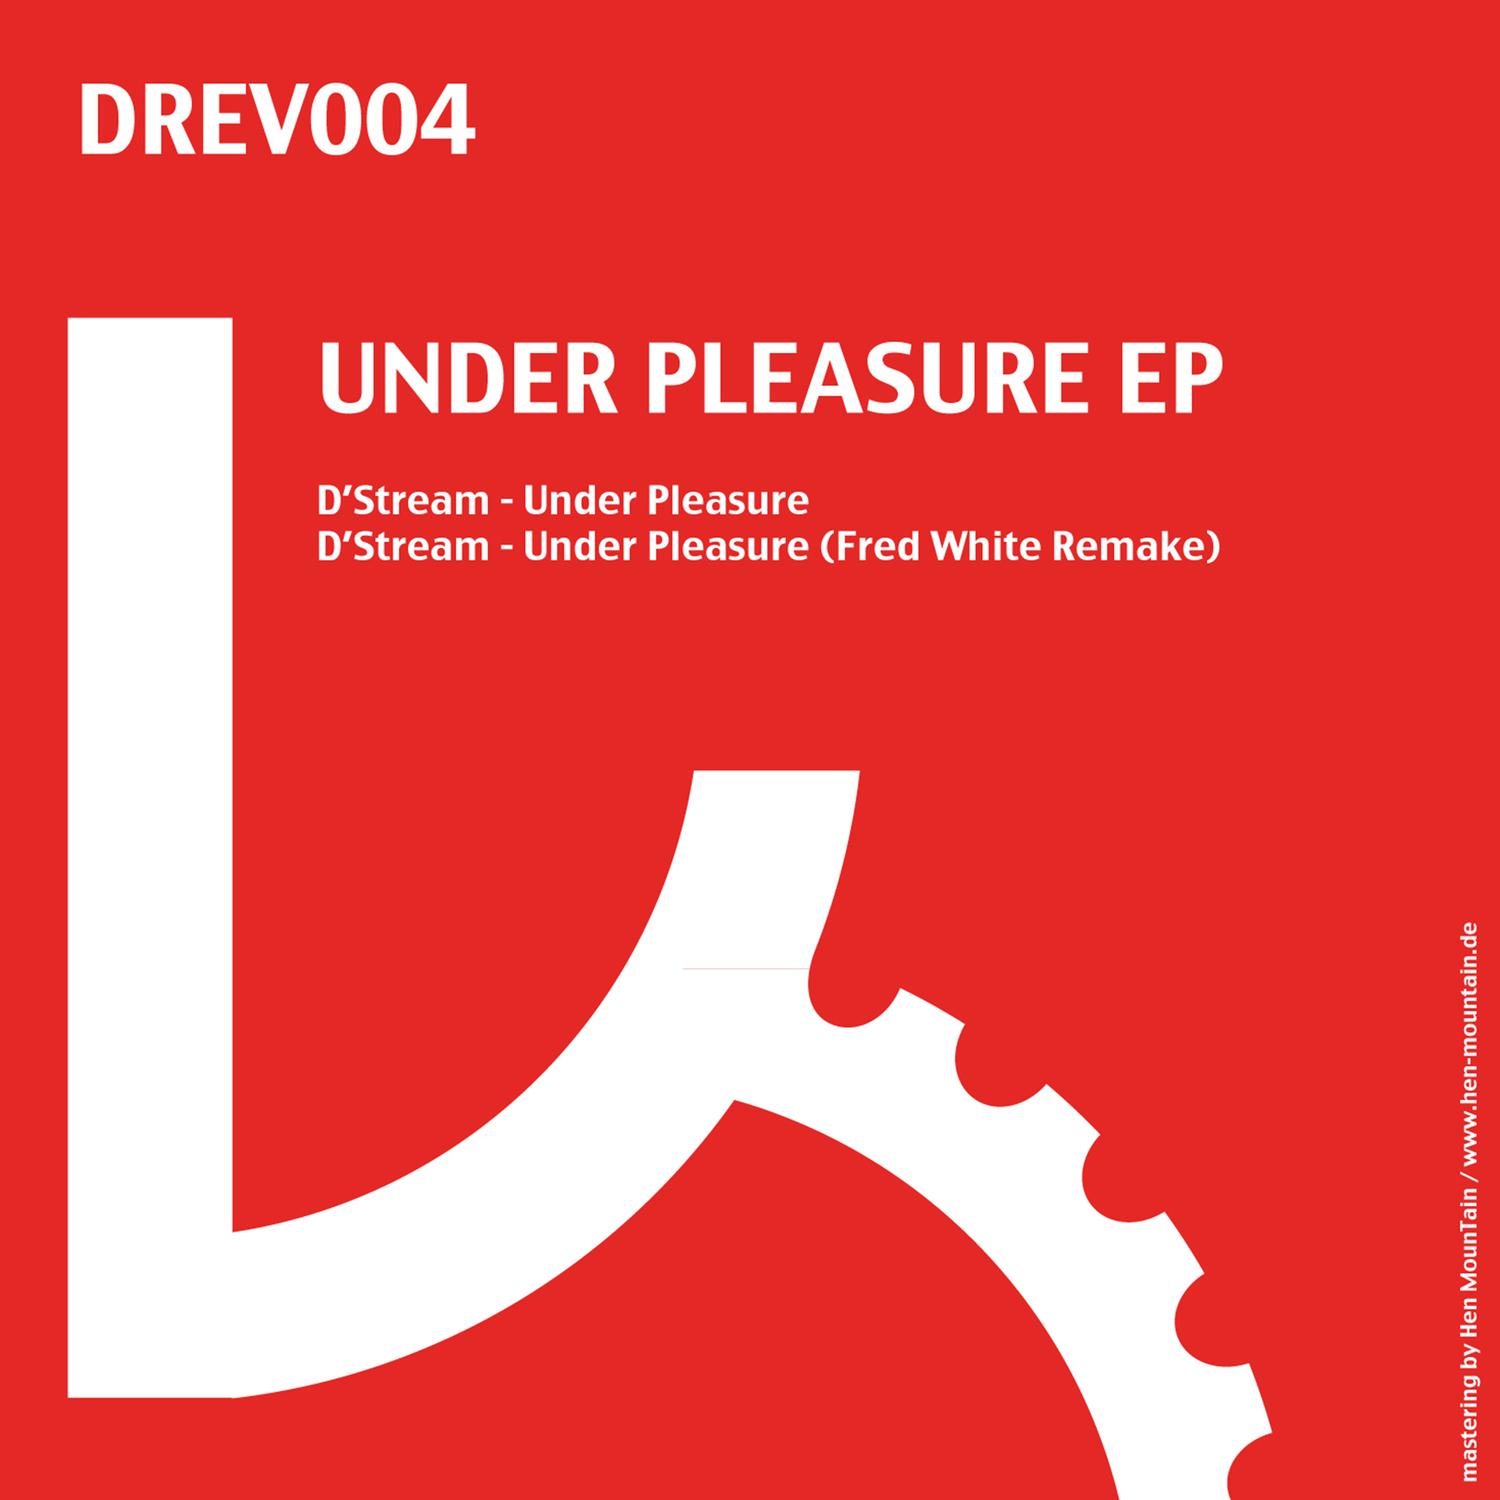 D'stream - Under Pleasure